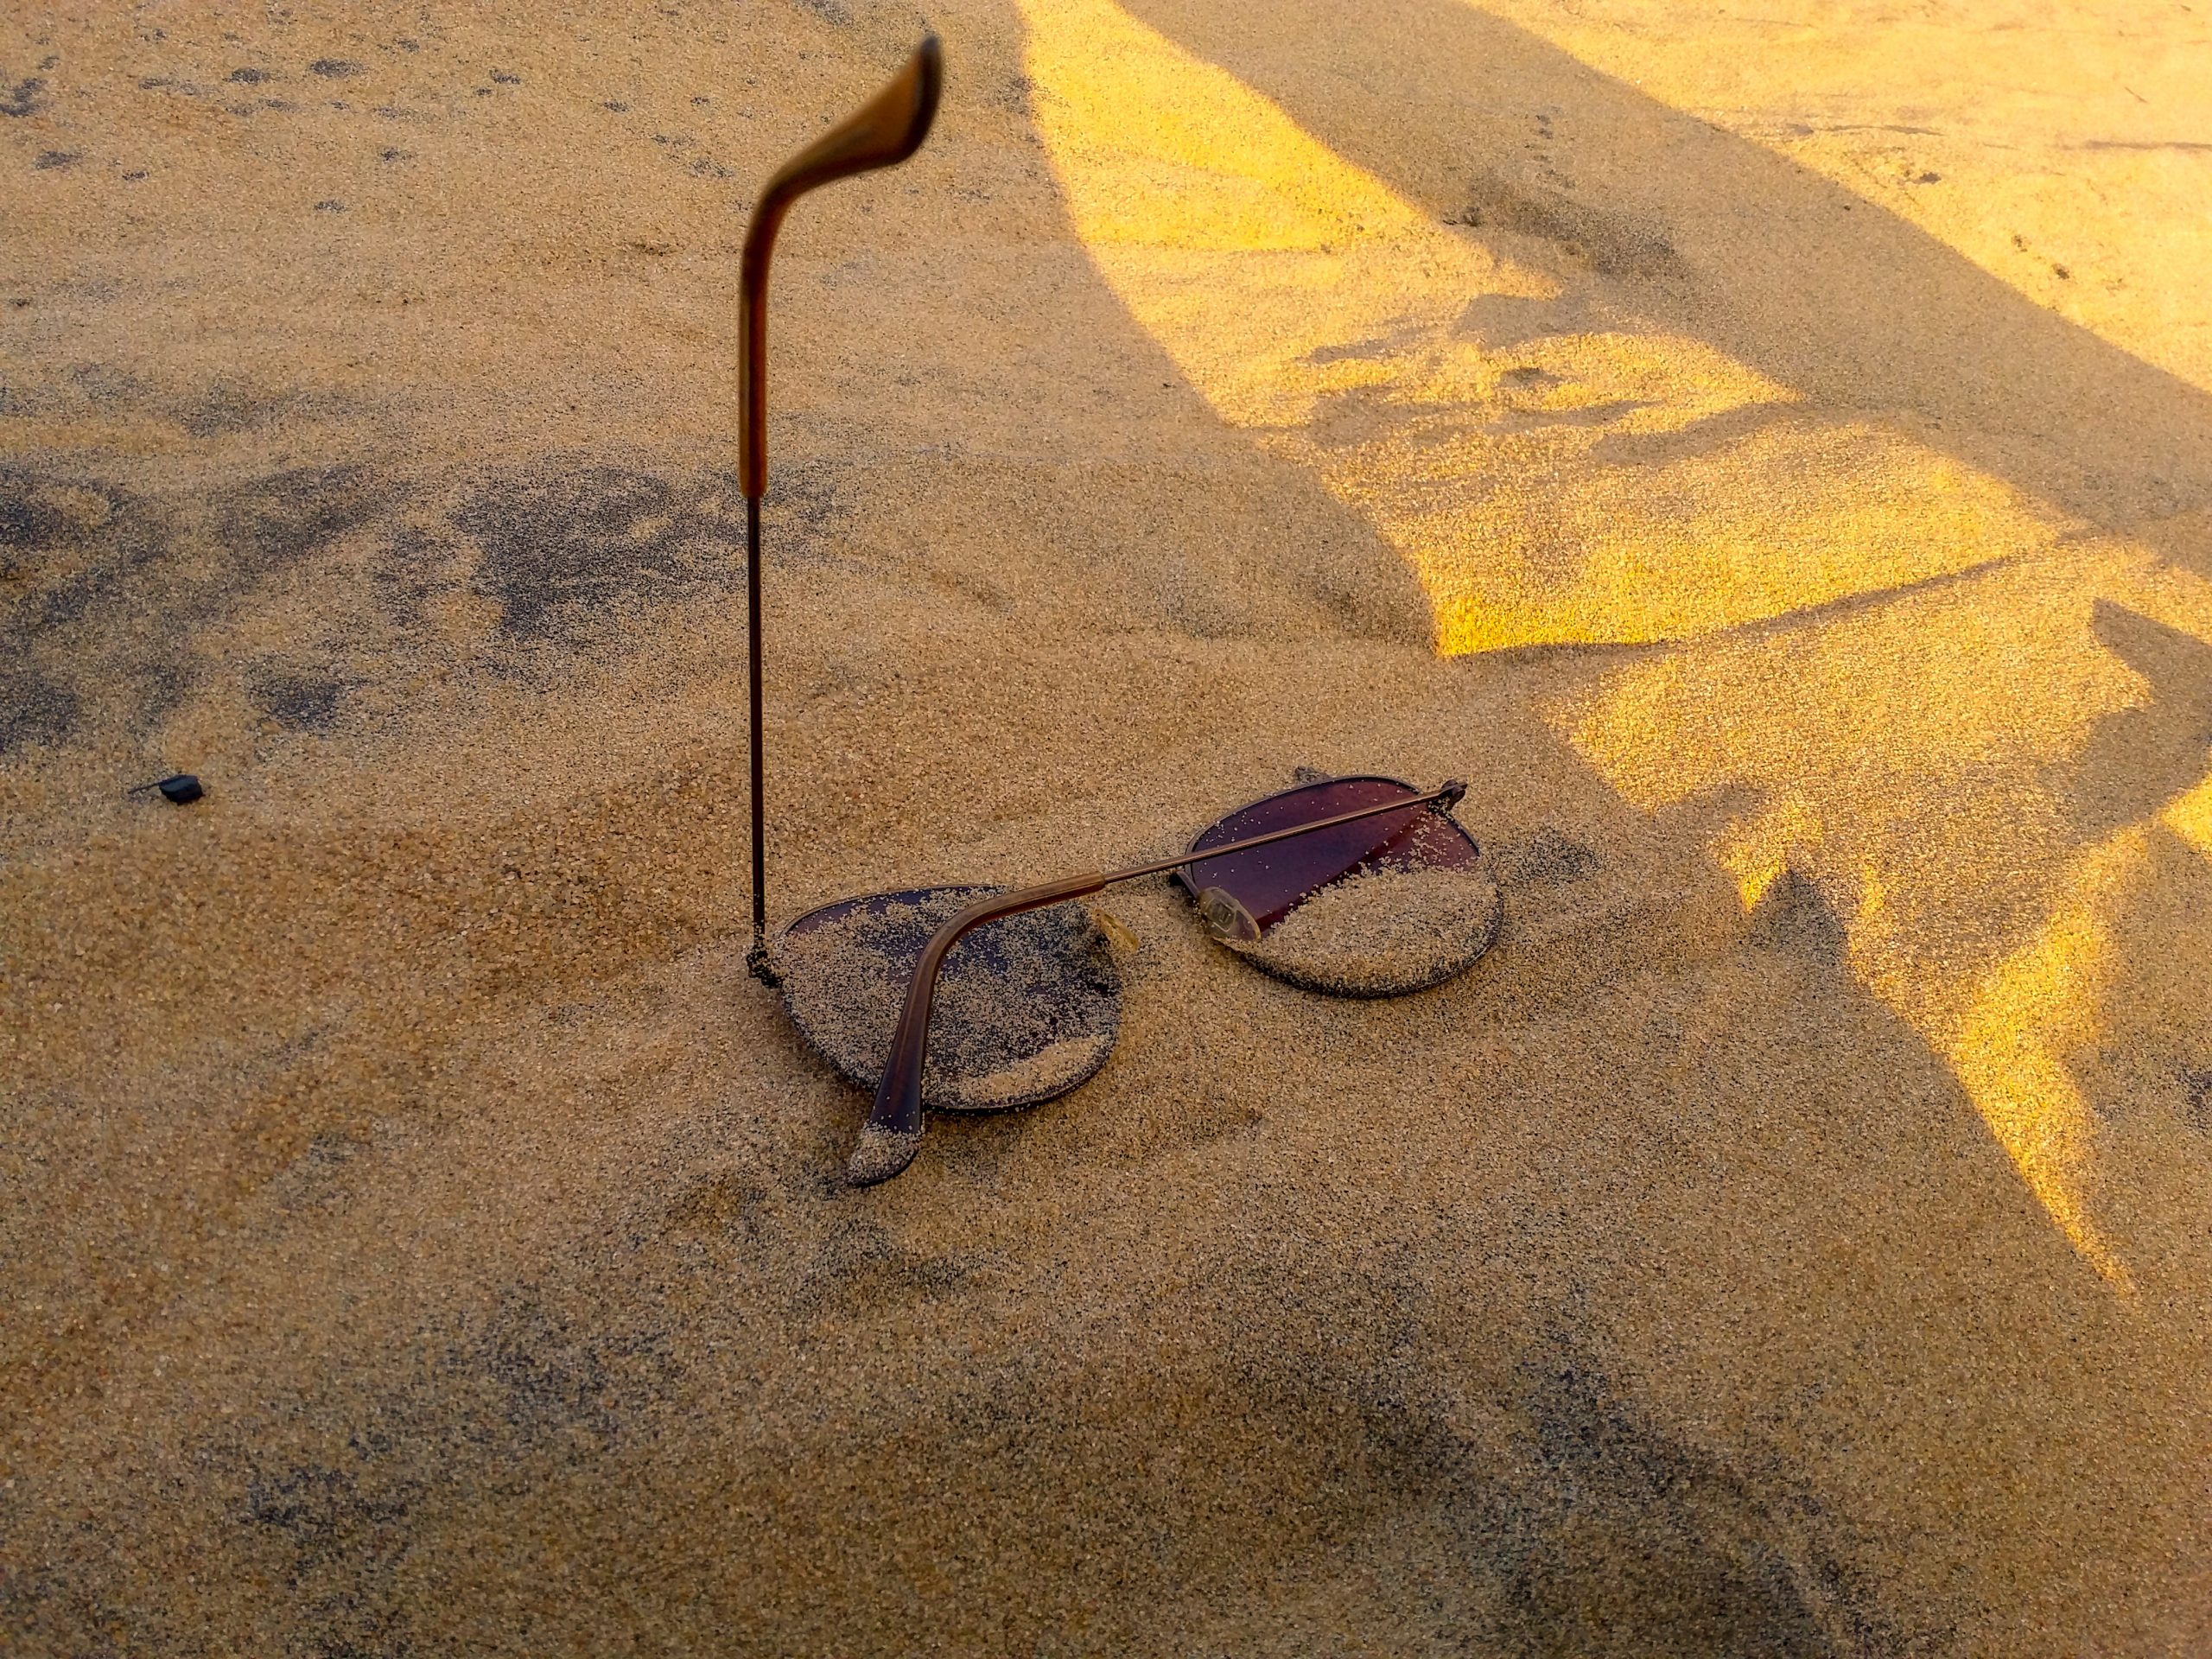 Sun glasses on sand near a beach